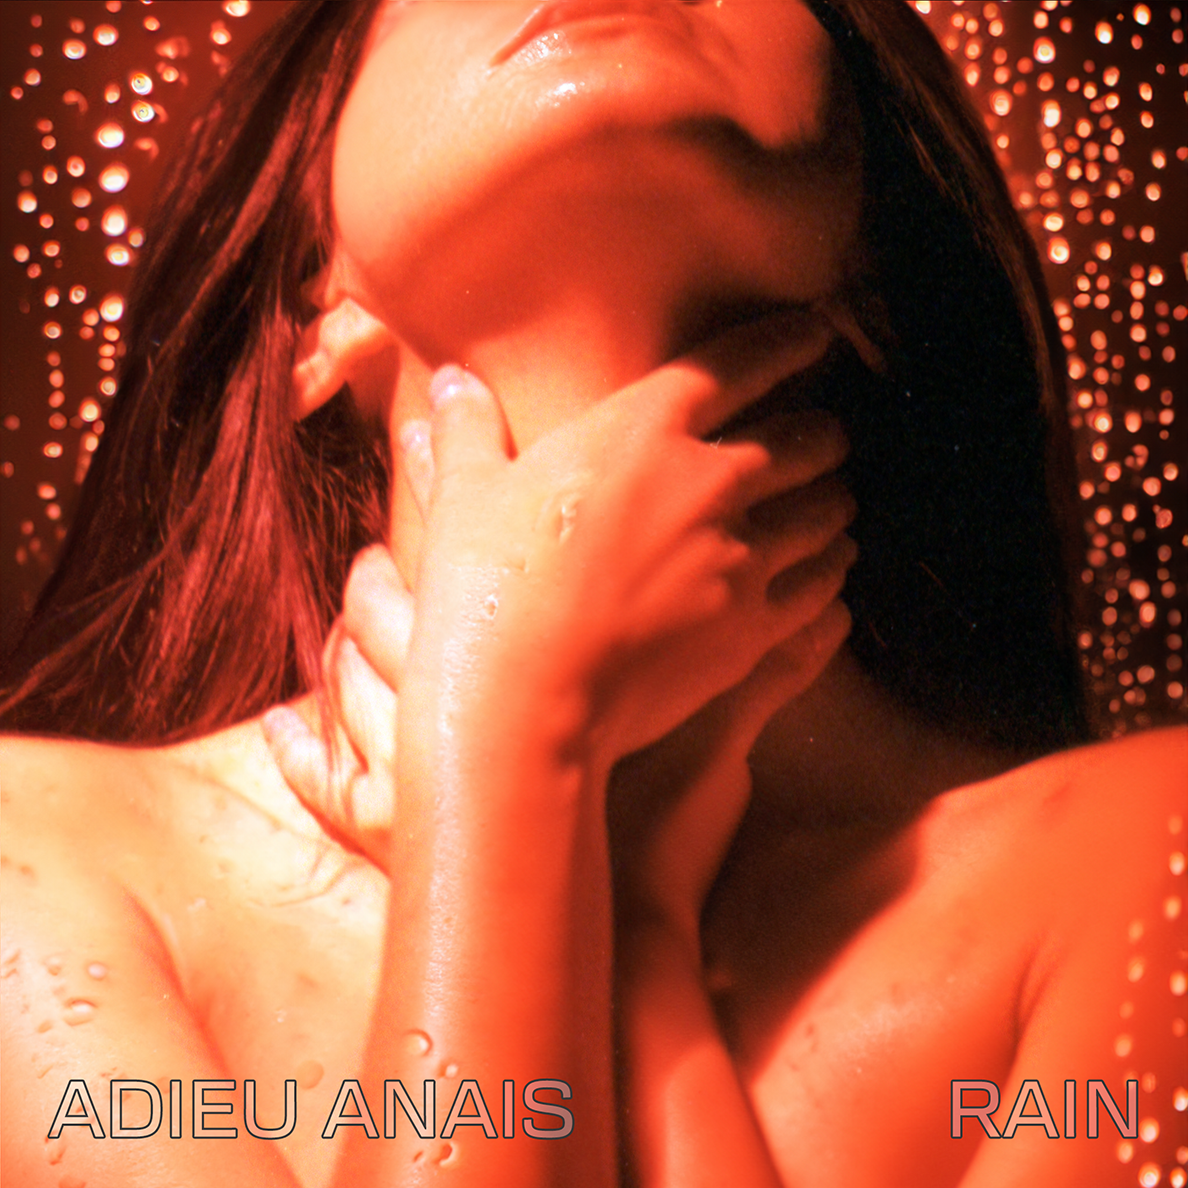 First single "Rain" by Adieu Anais